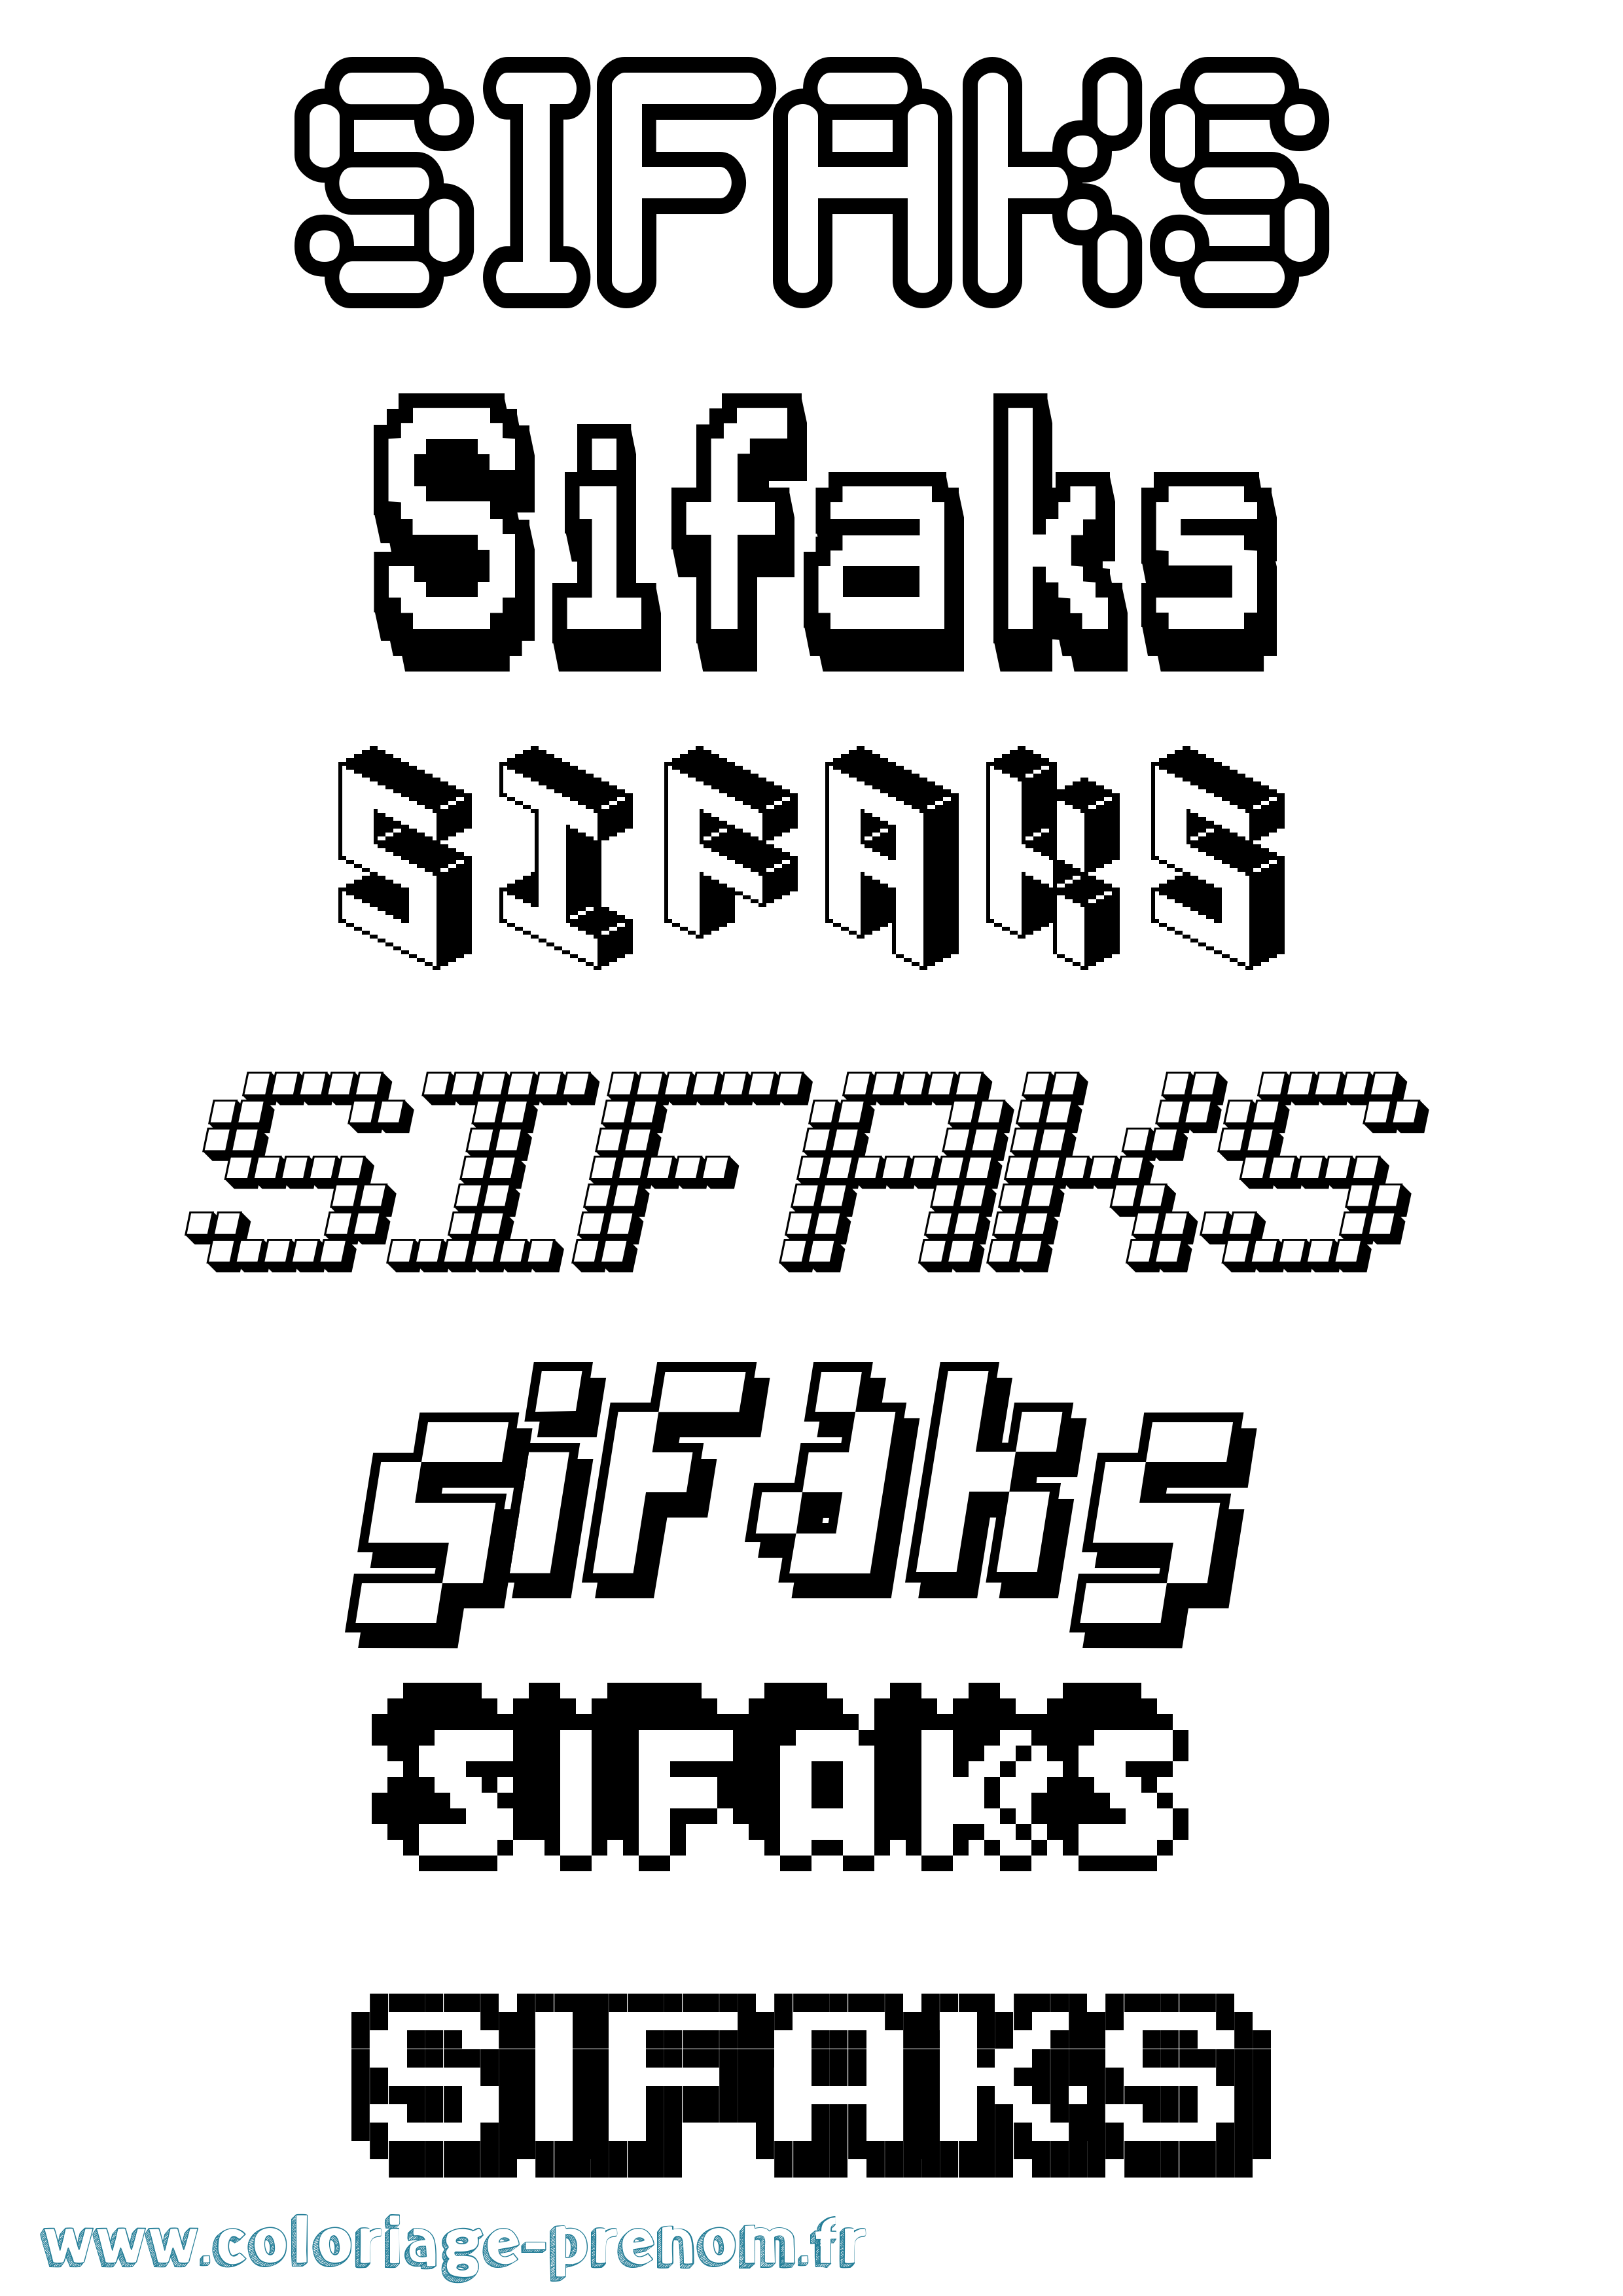 Coloriage prénom Sifaks Pixel